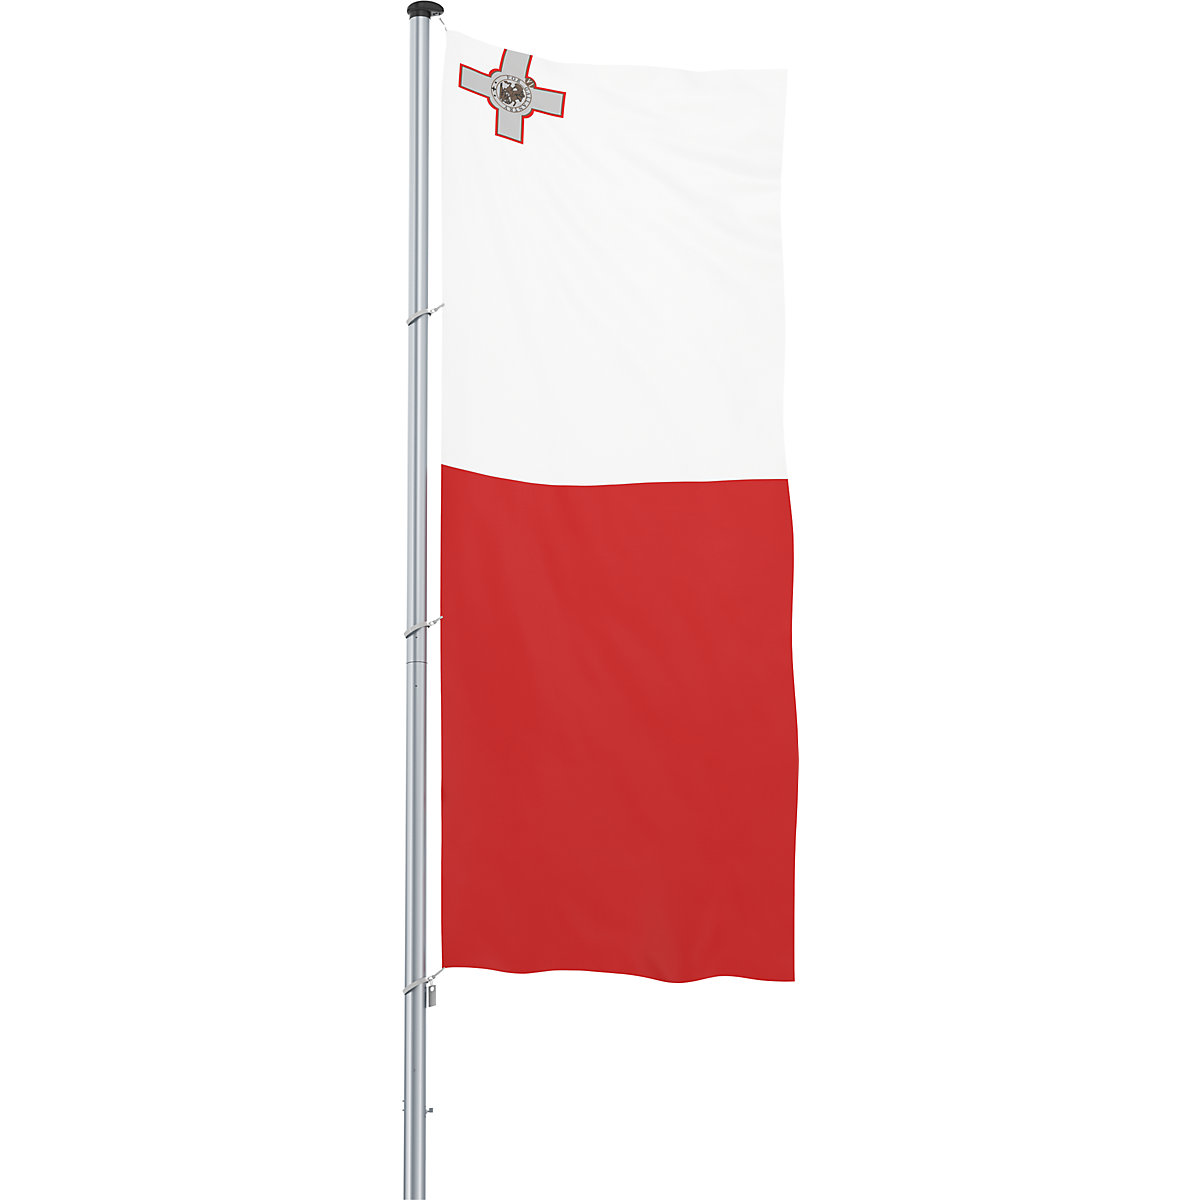 Bandiera/Bandiera nazionale – Mannus, formato 1,2 x 3 m, Malta-4